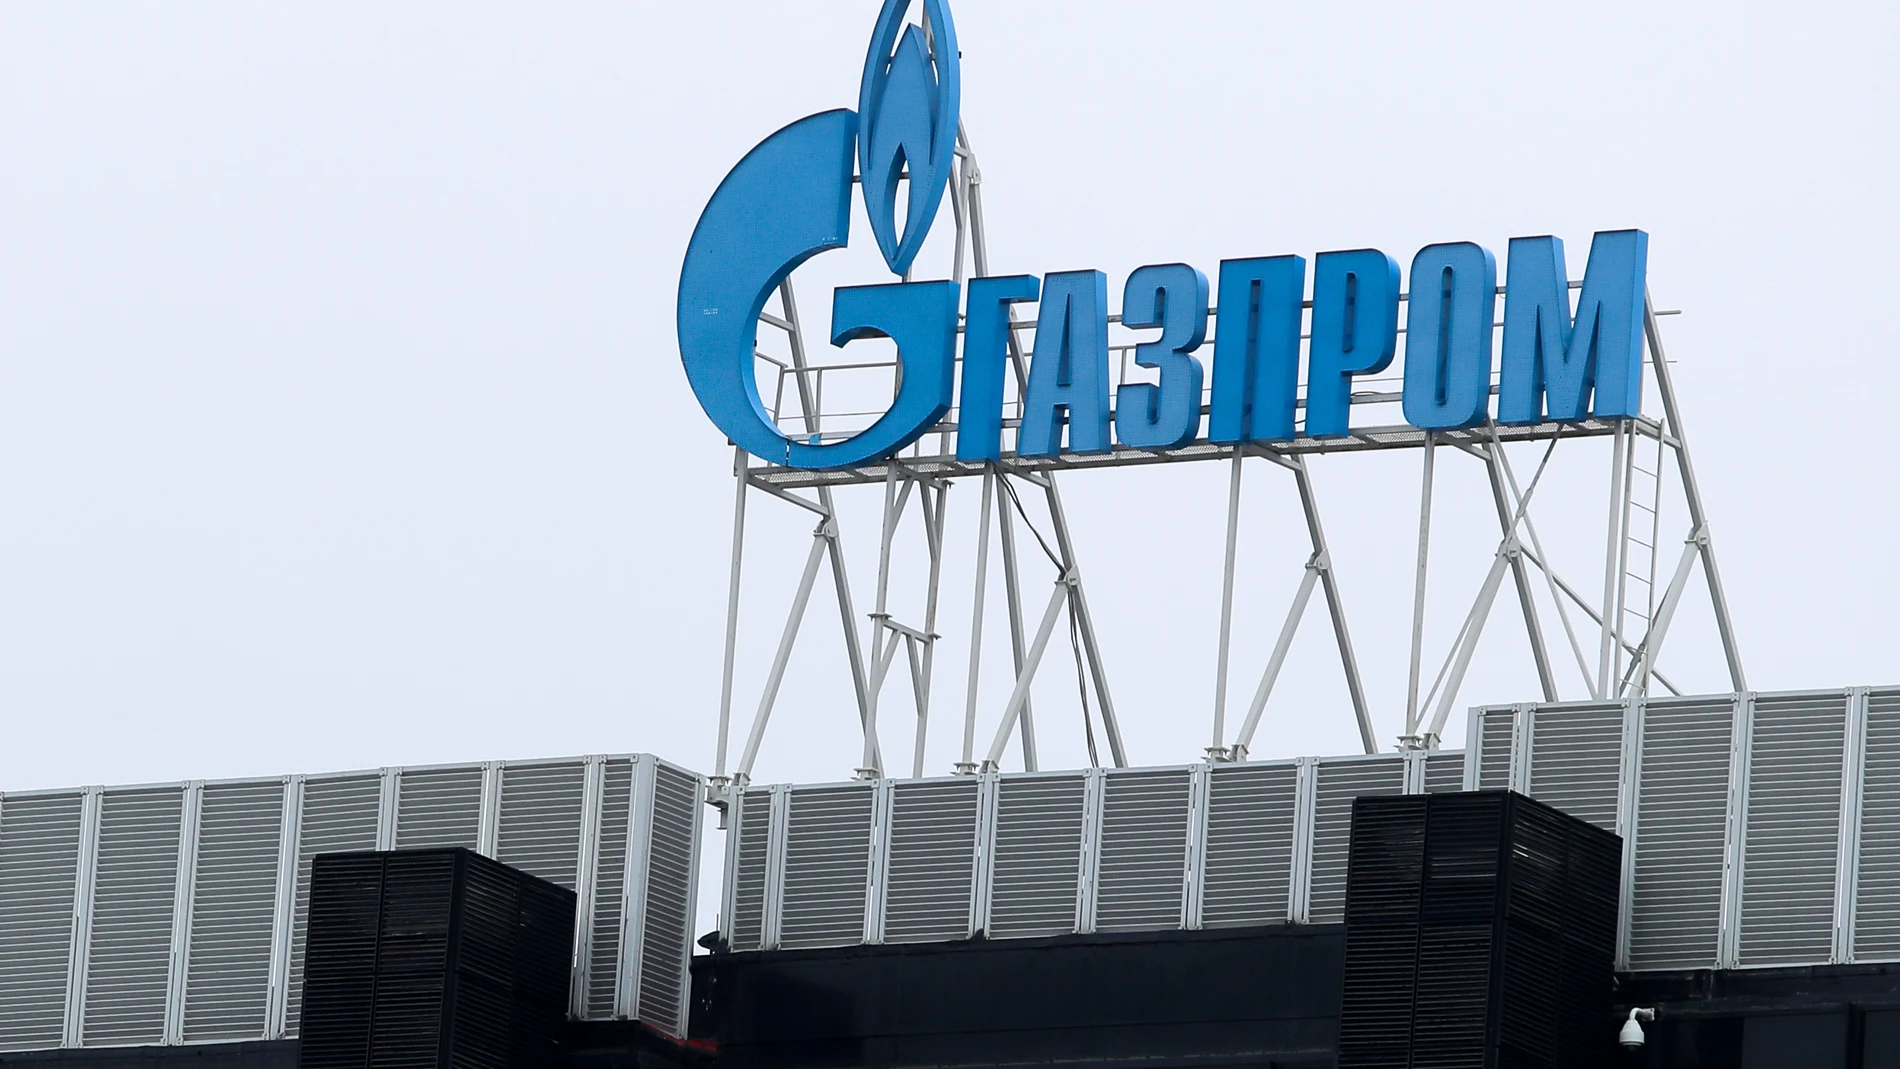 Imagen de la empresa rusa Gazprom en San Petersburgo